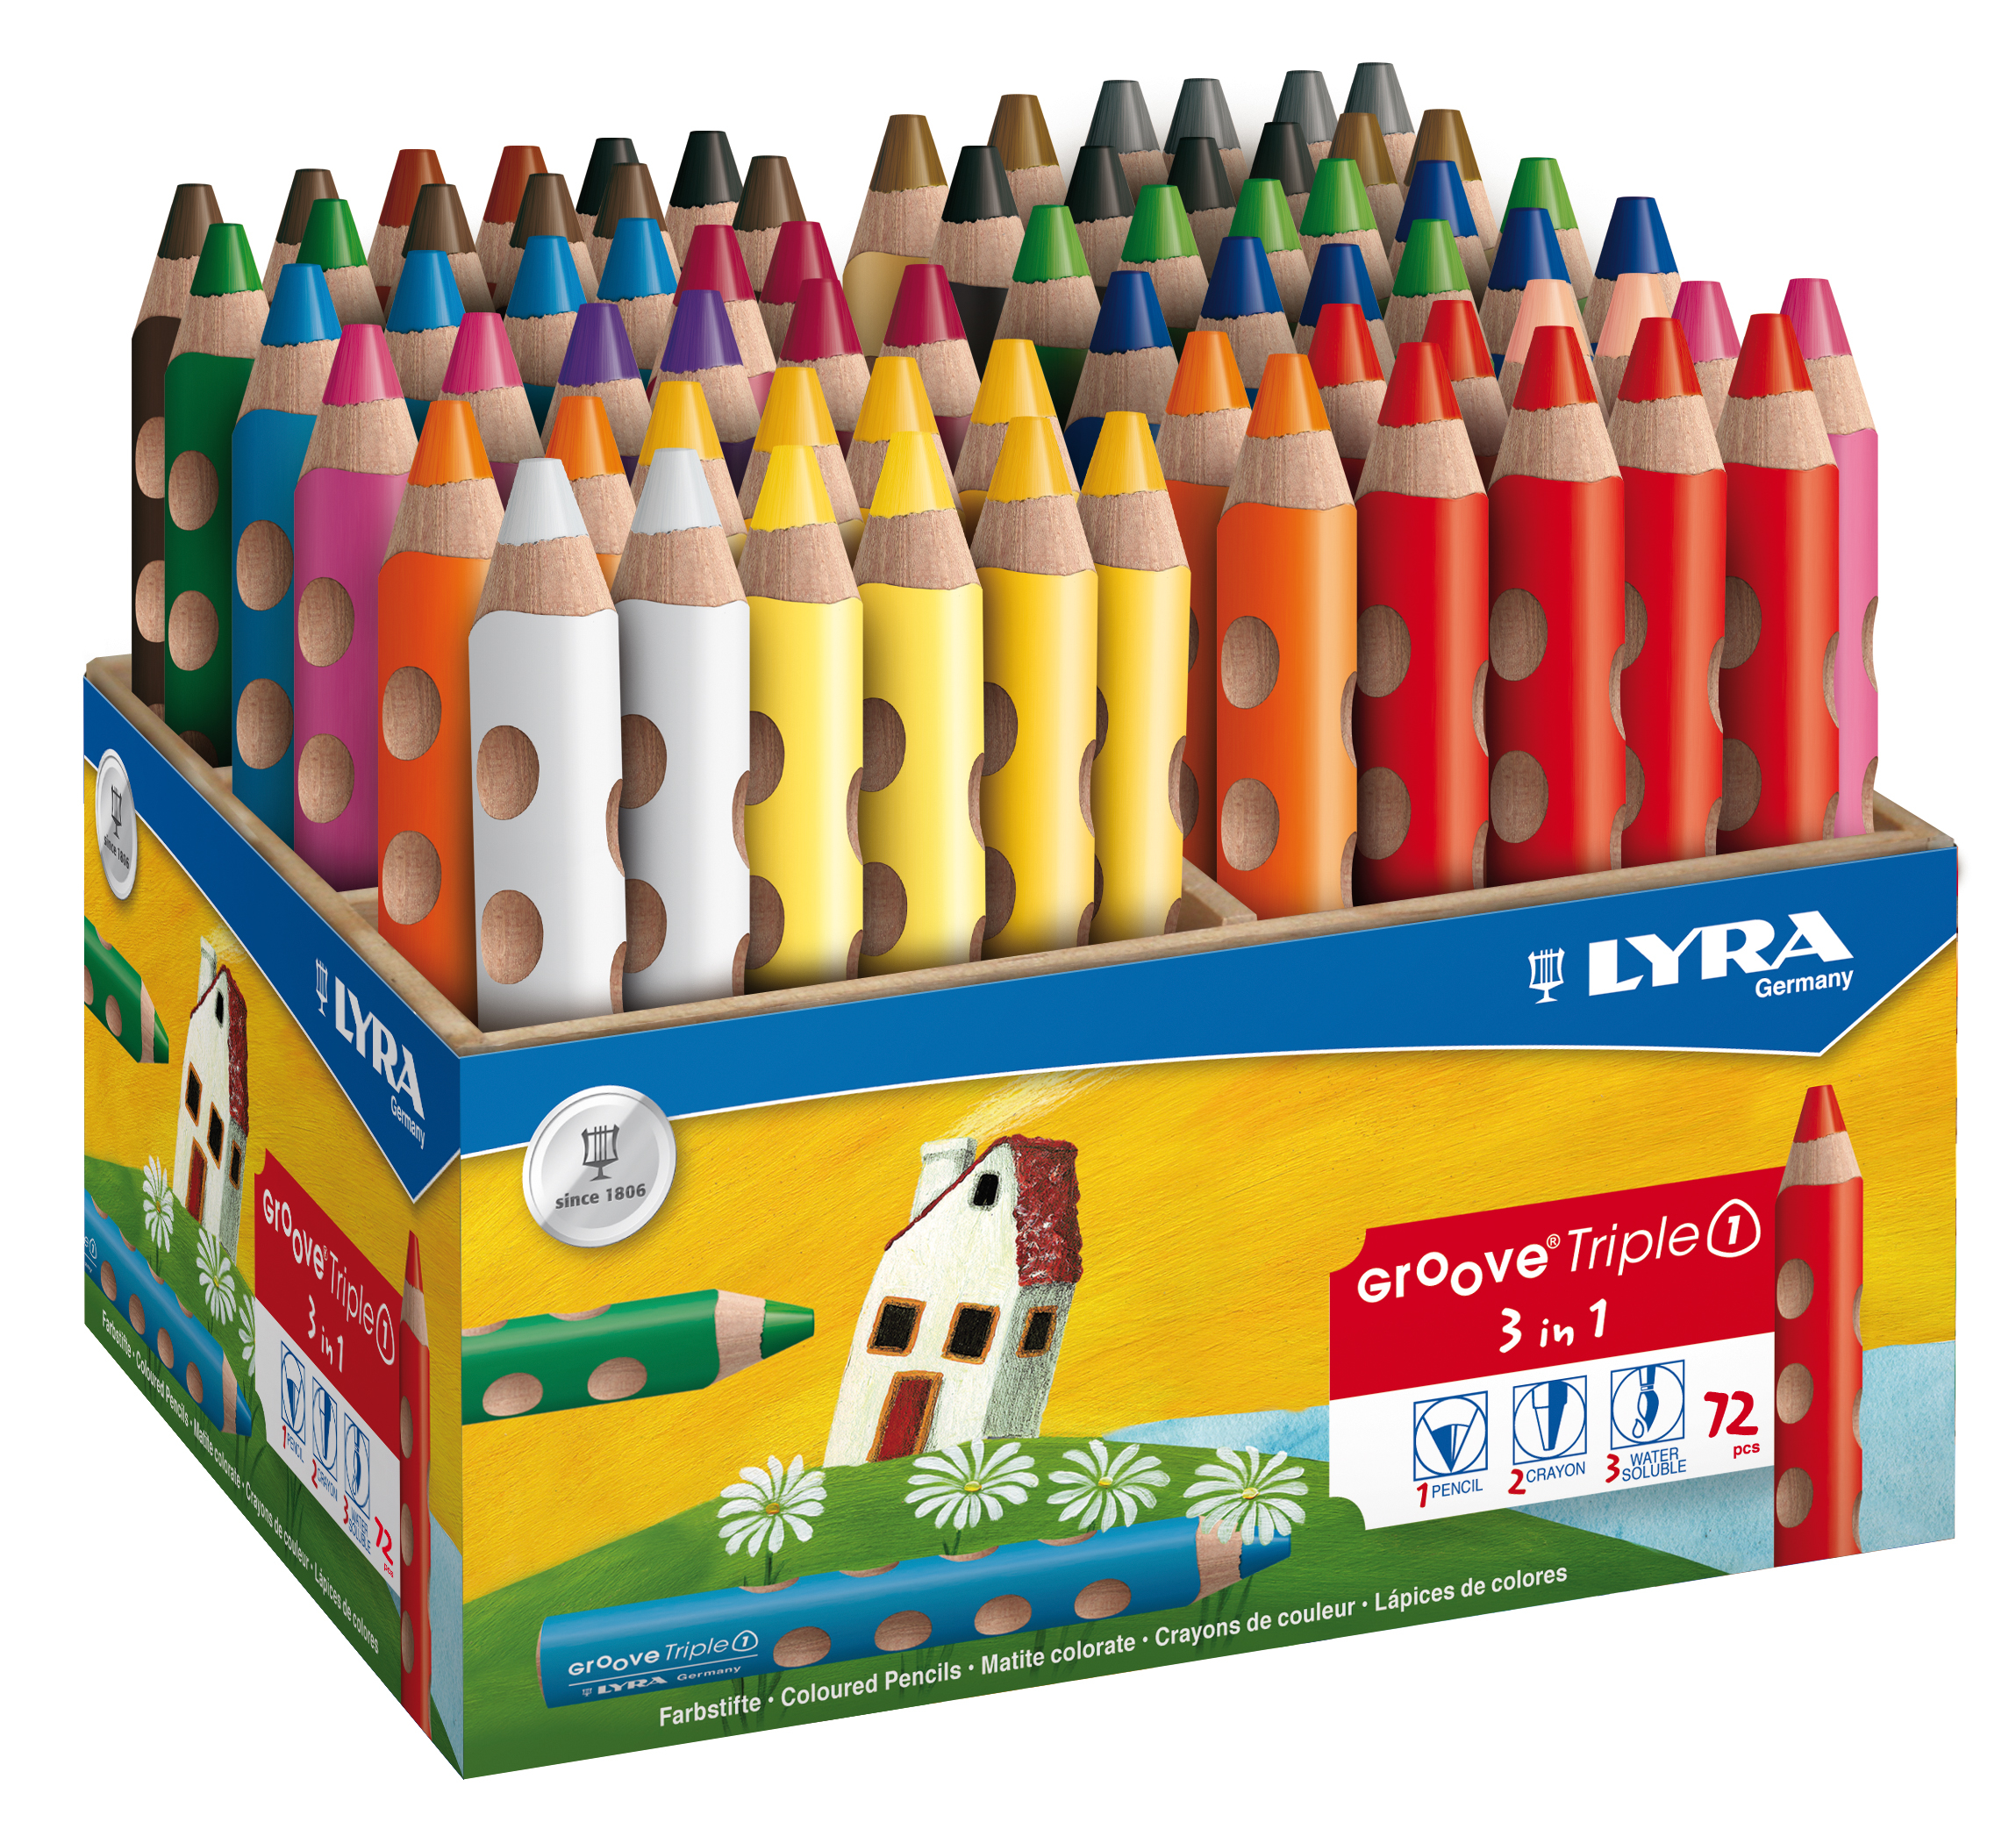 LYRA Crayon de couleur Triple 1 3832720 Box 72 pcs.